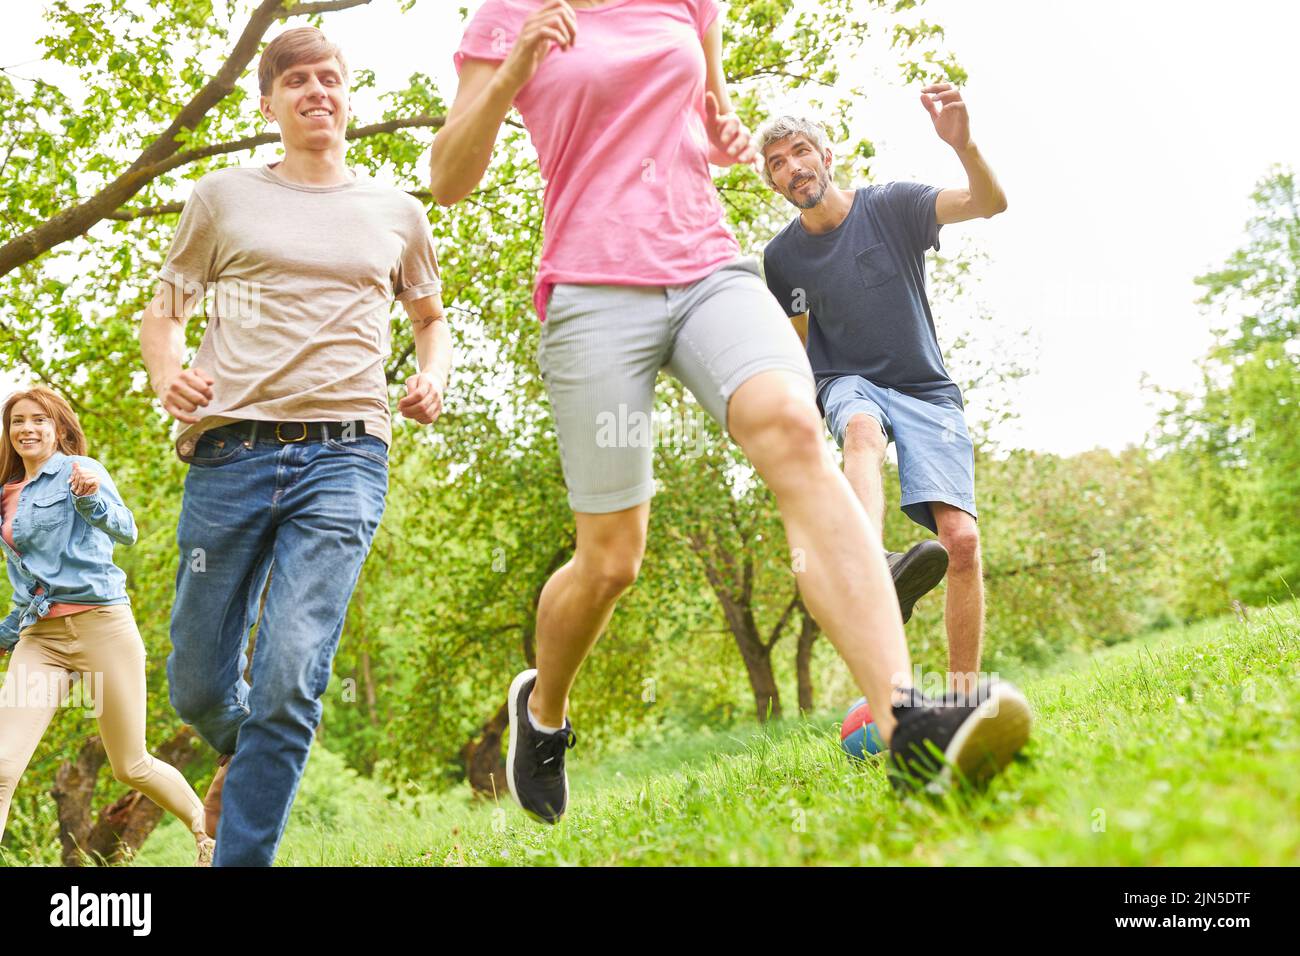 Grupo de jóvenes corriendo en un prado en verano como un entrenamiento físico o juego Foto de stock